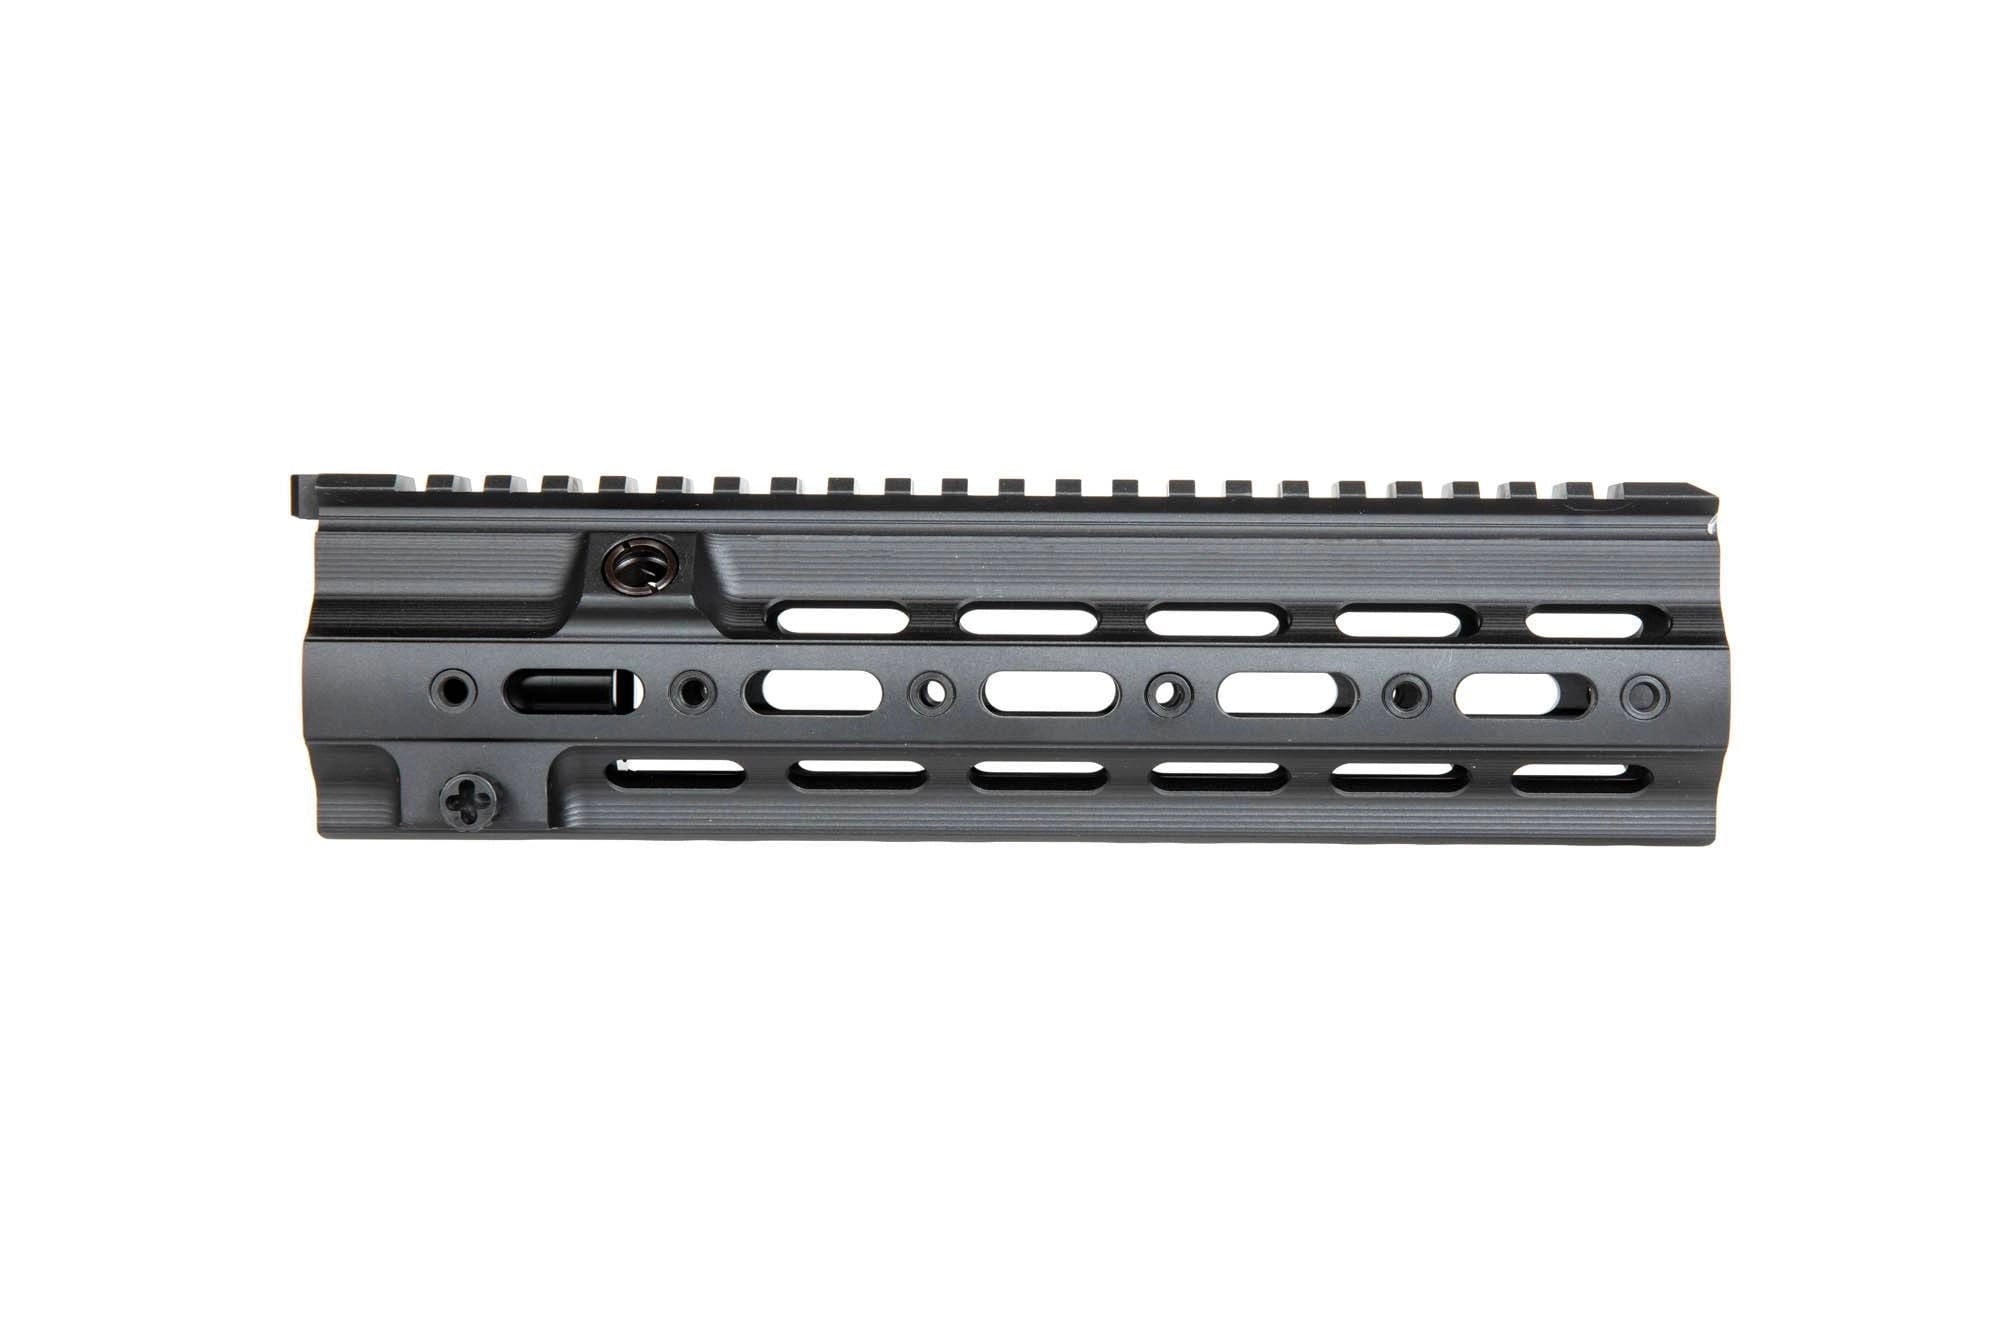 Protège main RIS type SMR pour carabines airsoft HK416 - noir